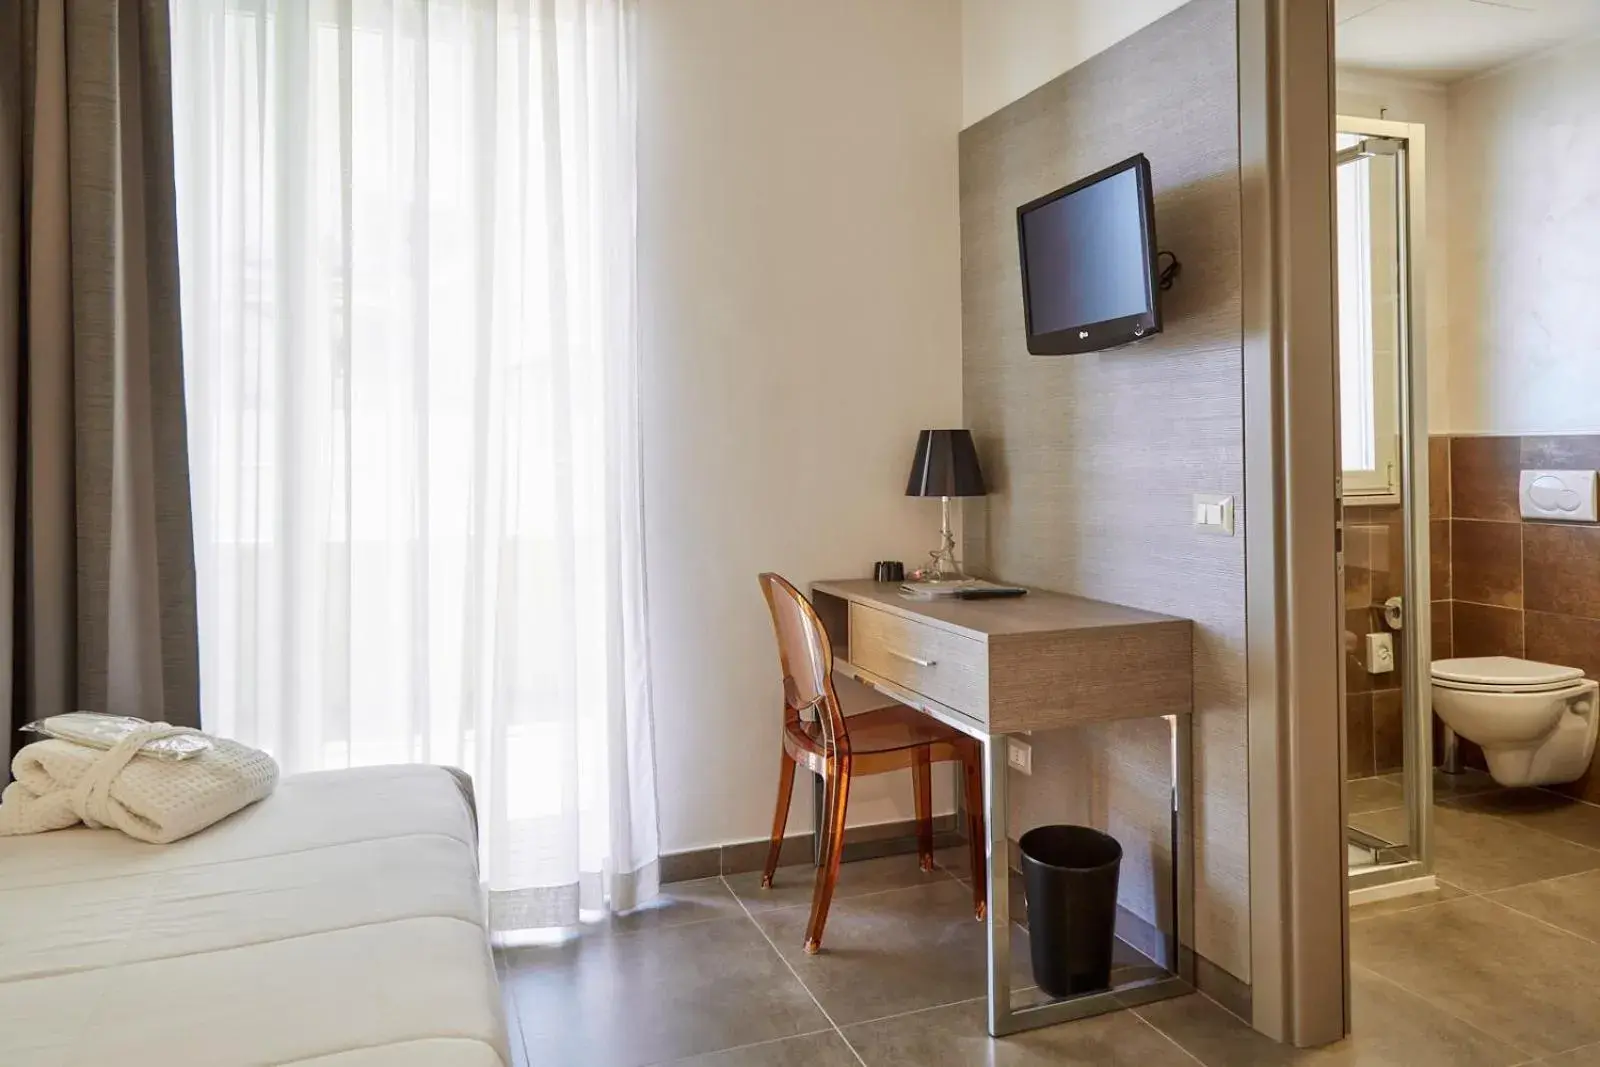 Bedroom, TV/Entertainment Center in Bellettini Hotel